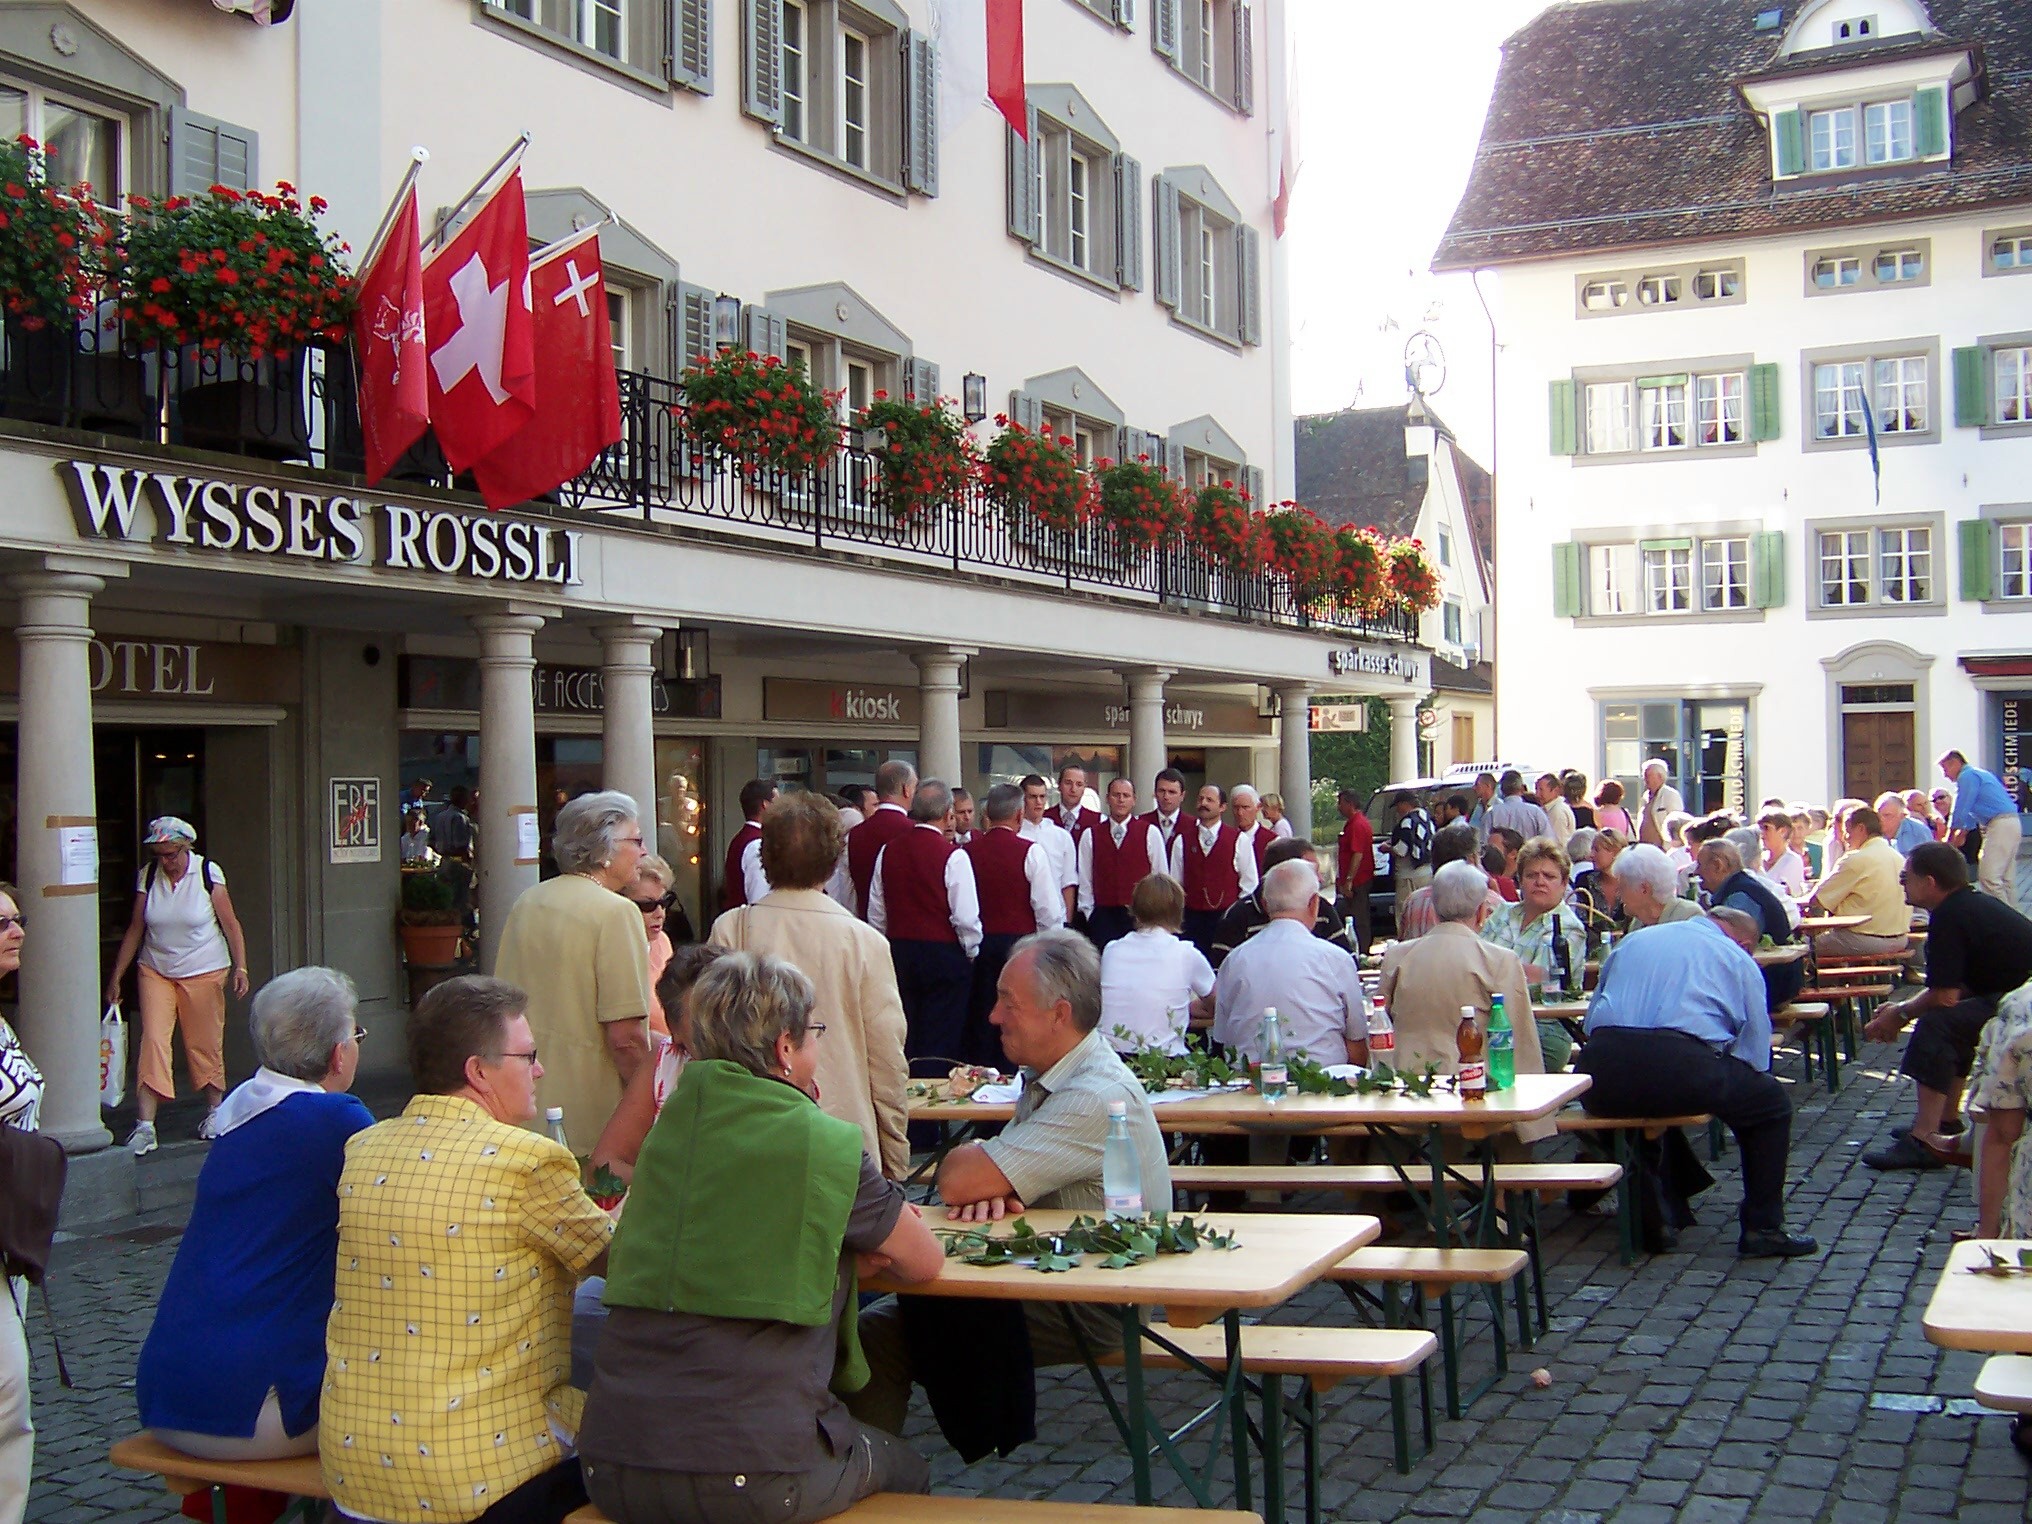 File:Schwyz Wysses Rössli.jpg - Wikimedia Commons